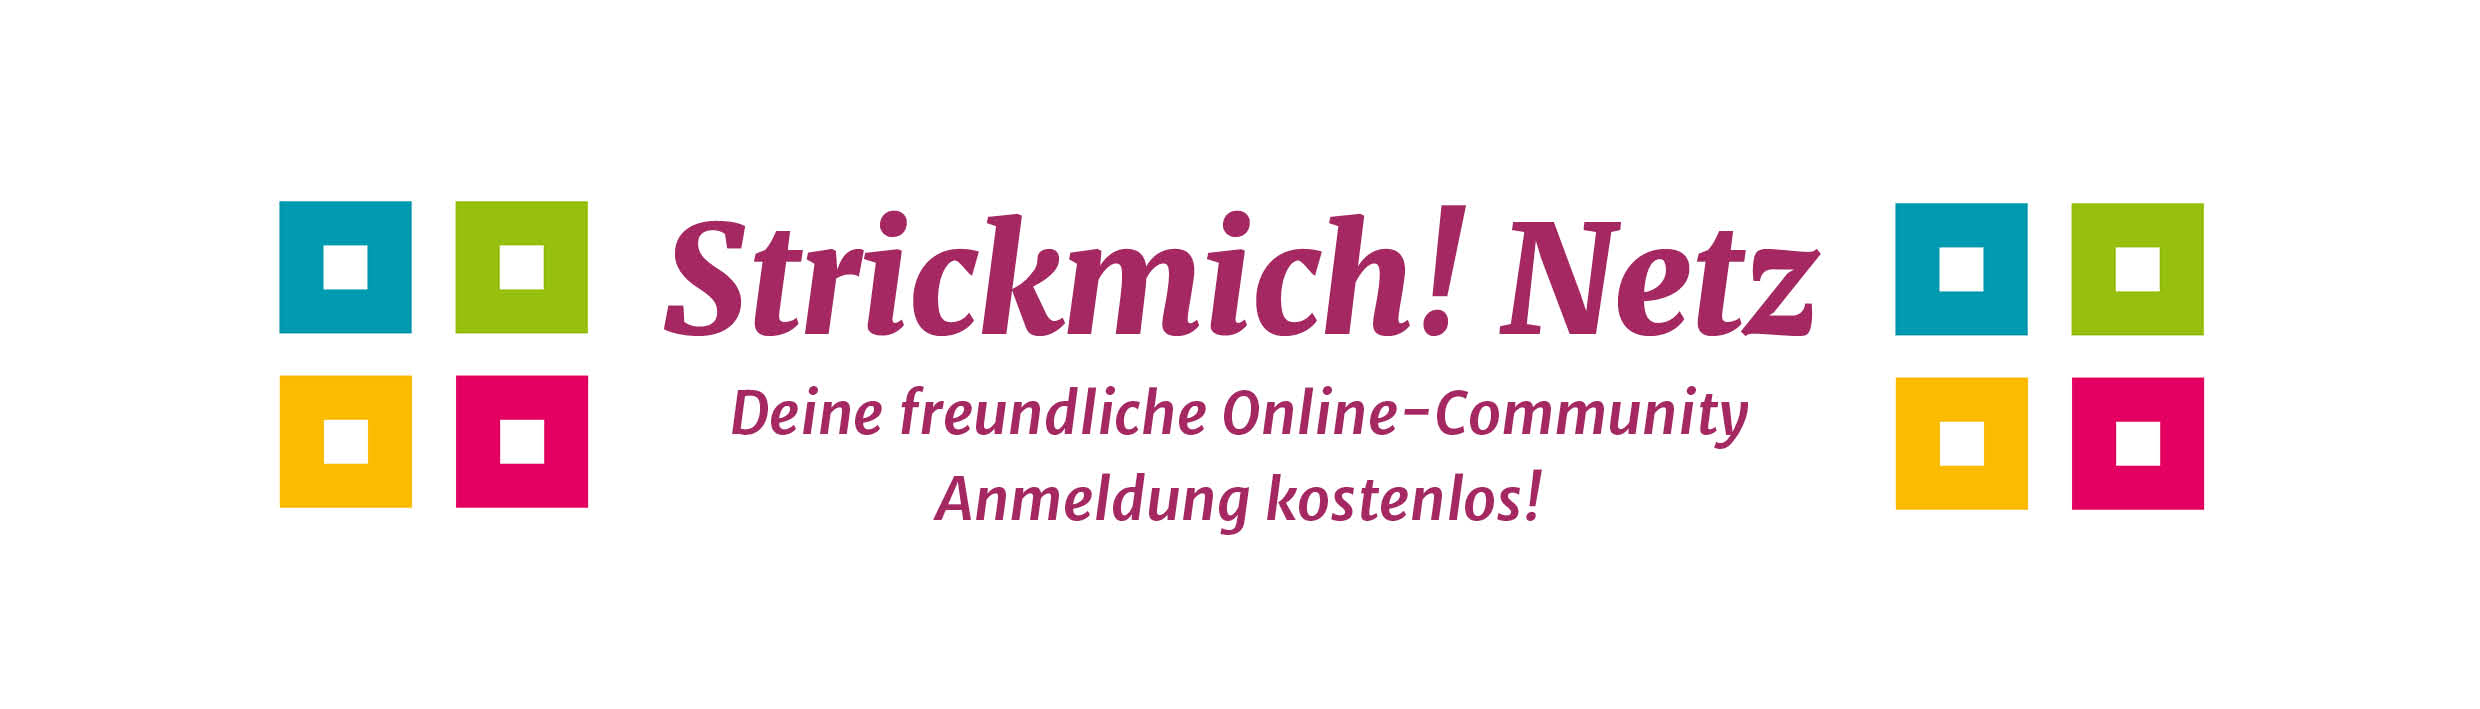 Banner Strickmich! Netz Link